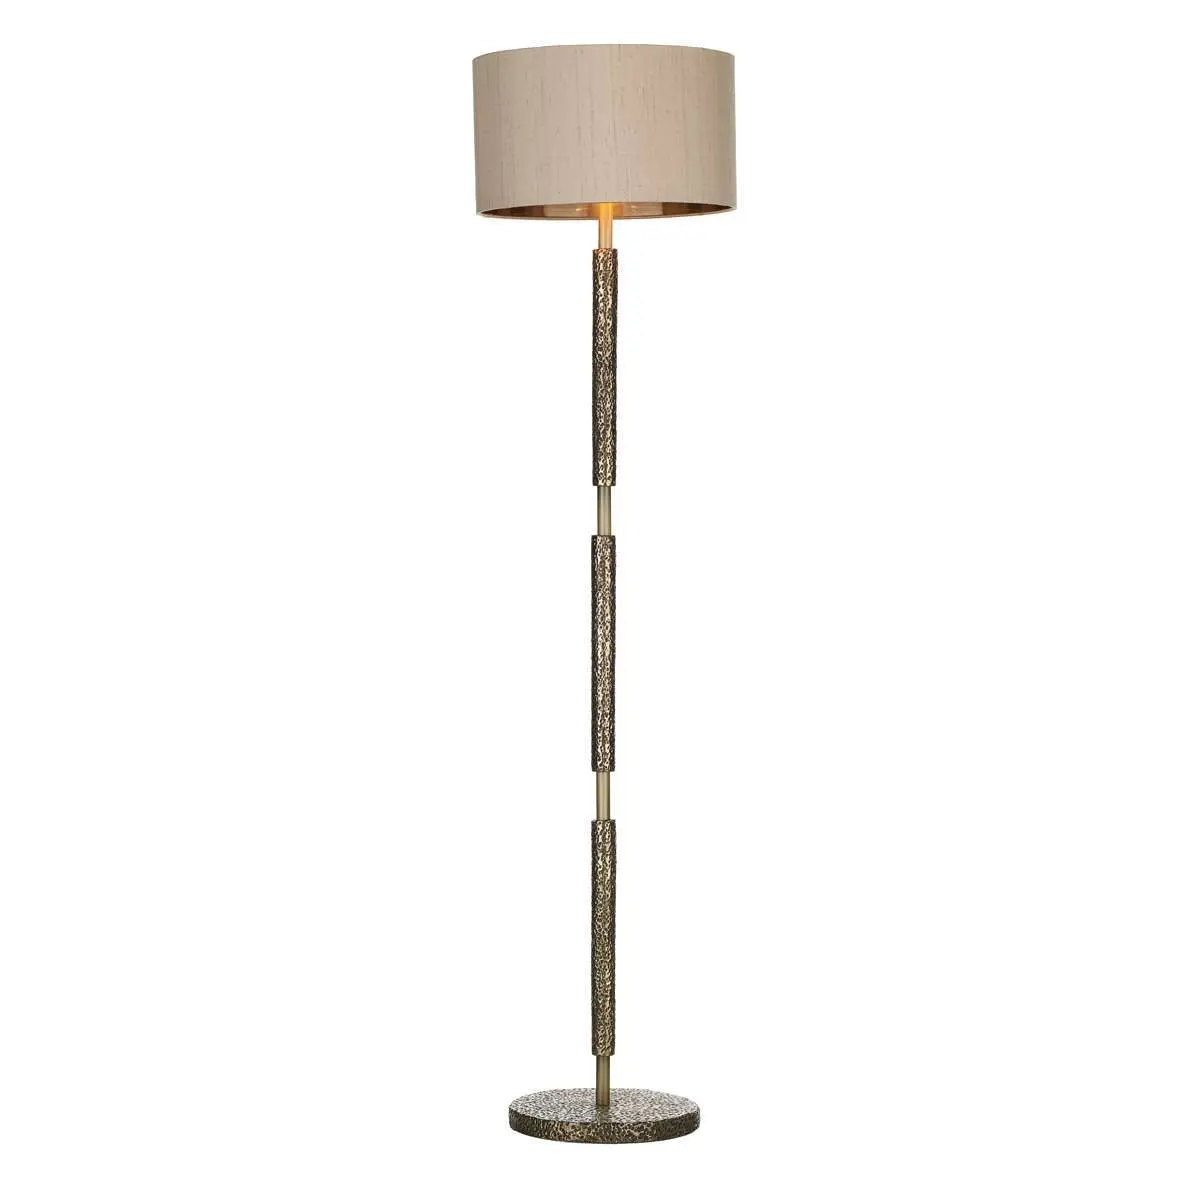 Sloane Bronze Floor Lamp